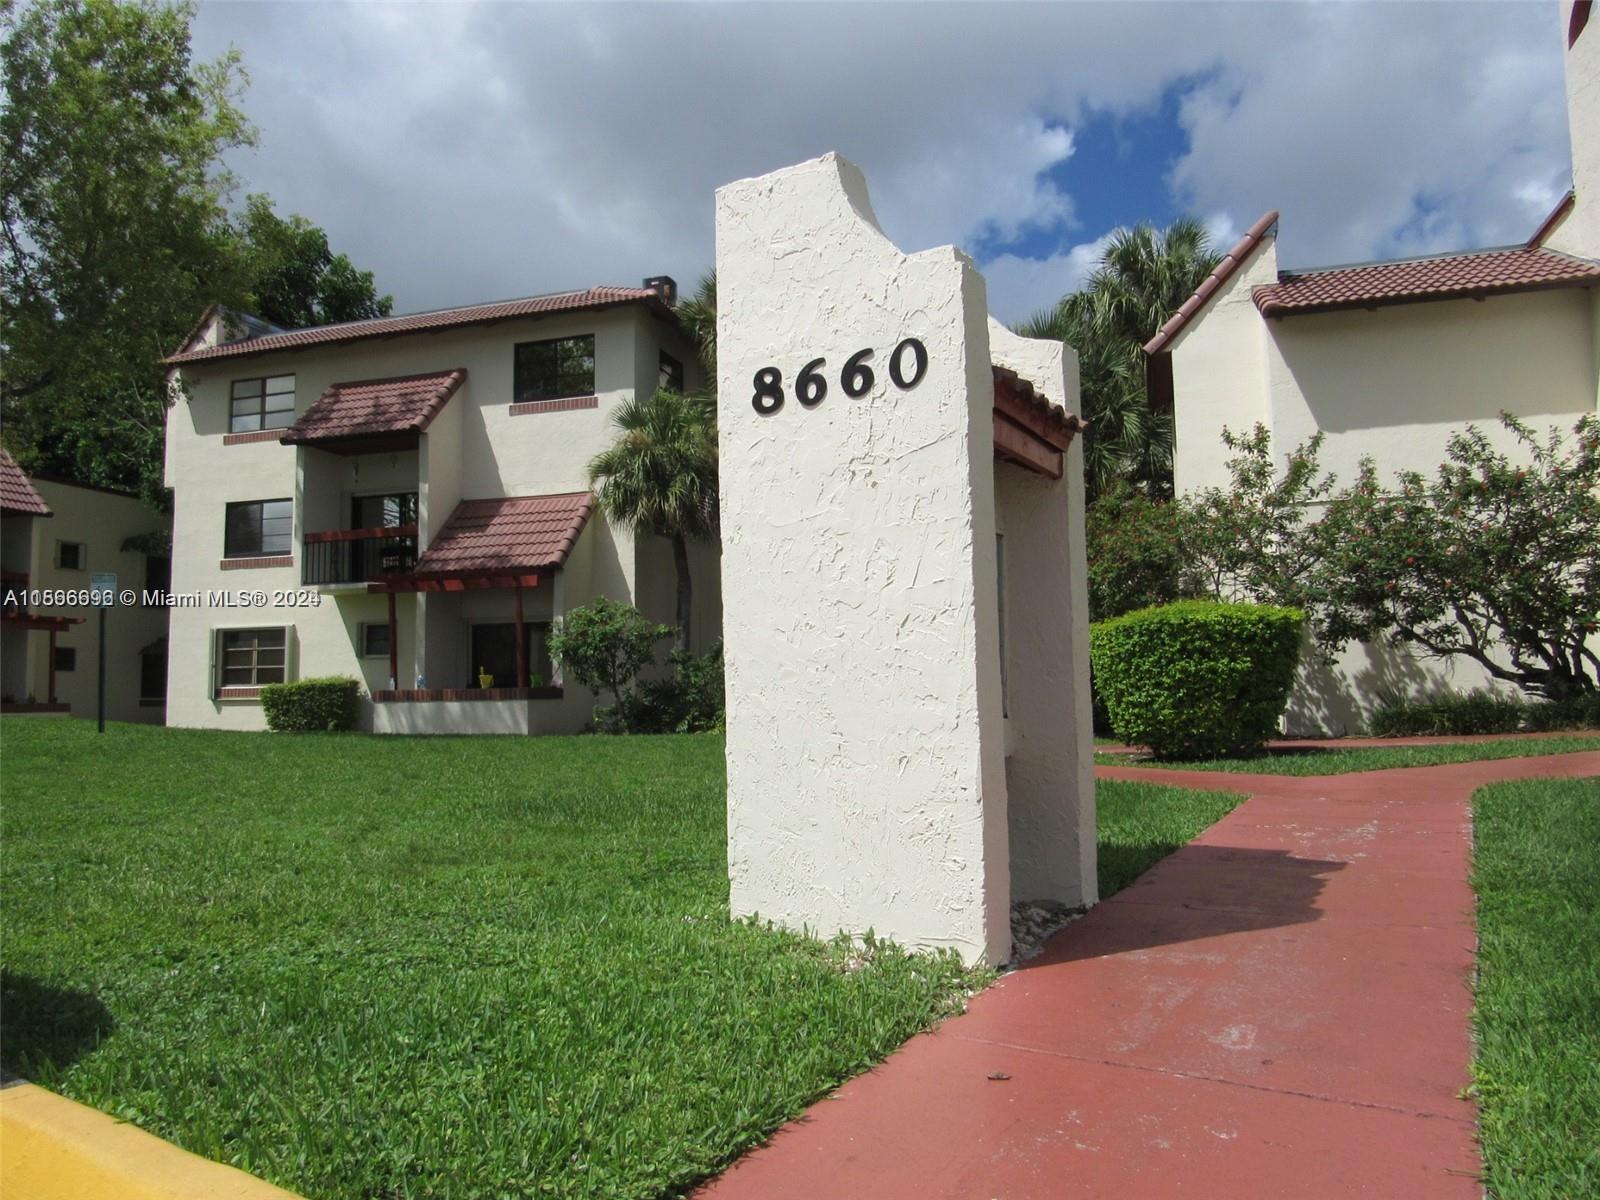 Photo of 8660 SW 149th Ave #217 in Miami, FL